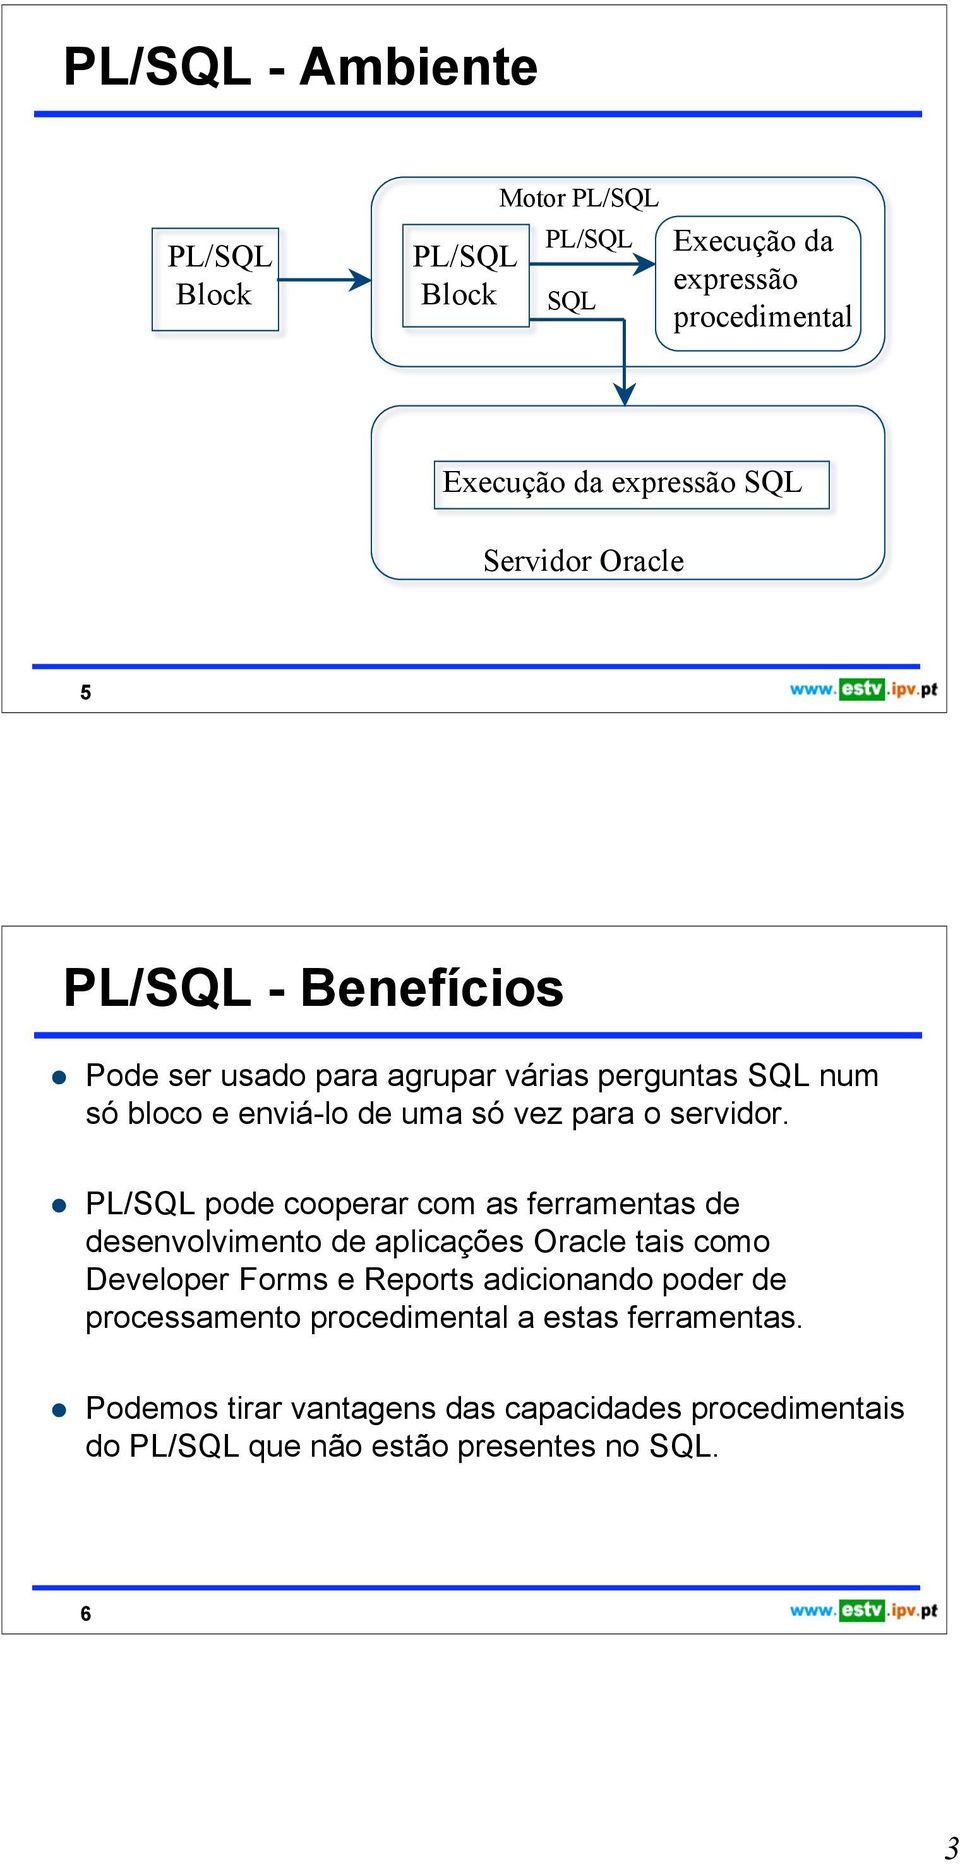 PL/SQL pode cooperar com as ferramentas de desenvolvimento de aplicações Oracle tais como Developer Forms e Reports adicionando poder de